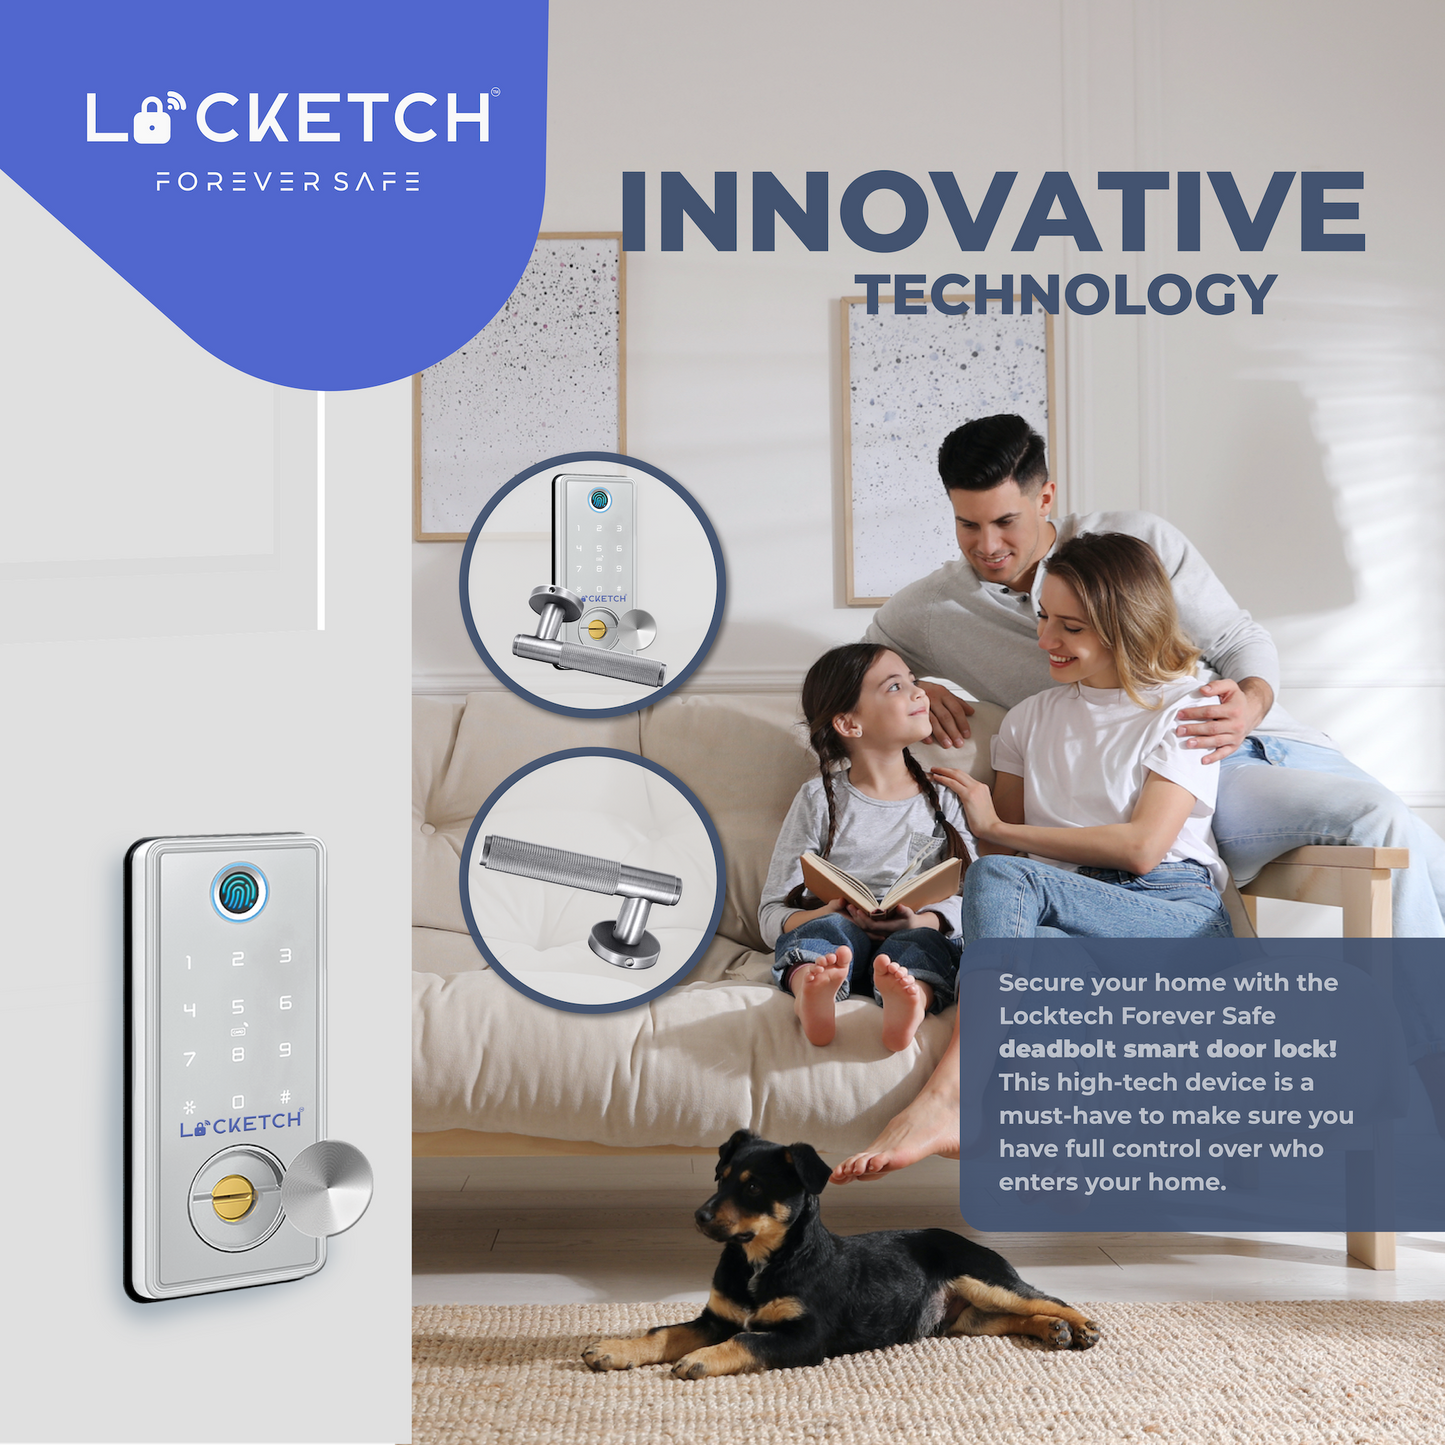 Locketch Deadbolt Smart Door Lock – 4-In-1 Keyless Smart Door Lock with Door Handle – Direct Fit Installation – Wi-Fi Connection